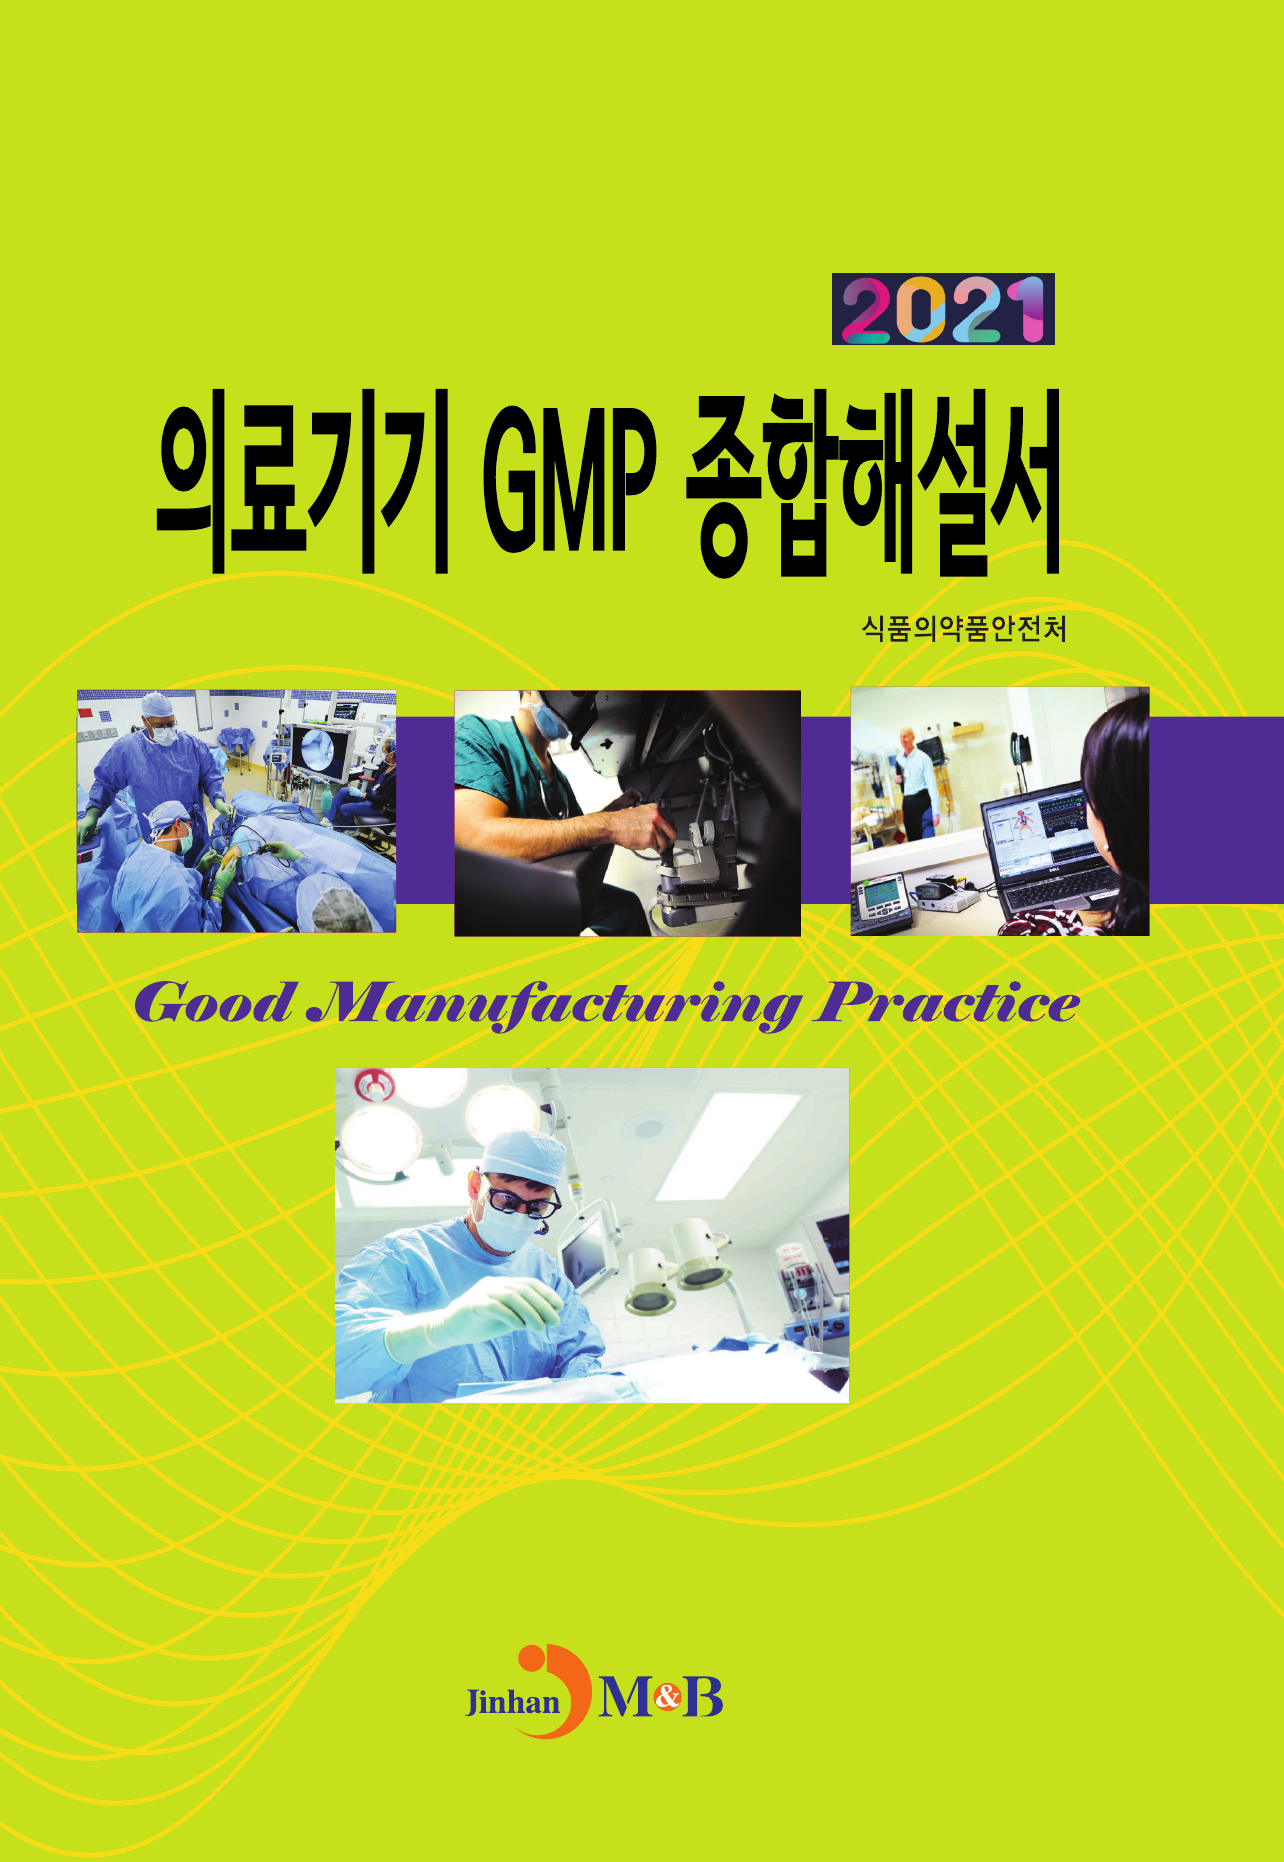 의료기기 GMP 종합해설서 2021